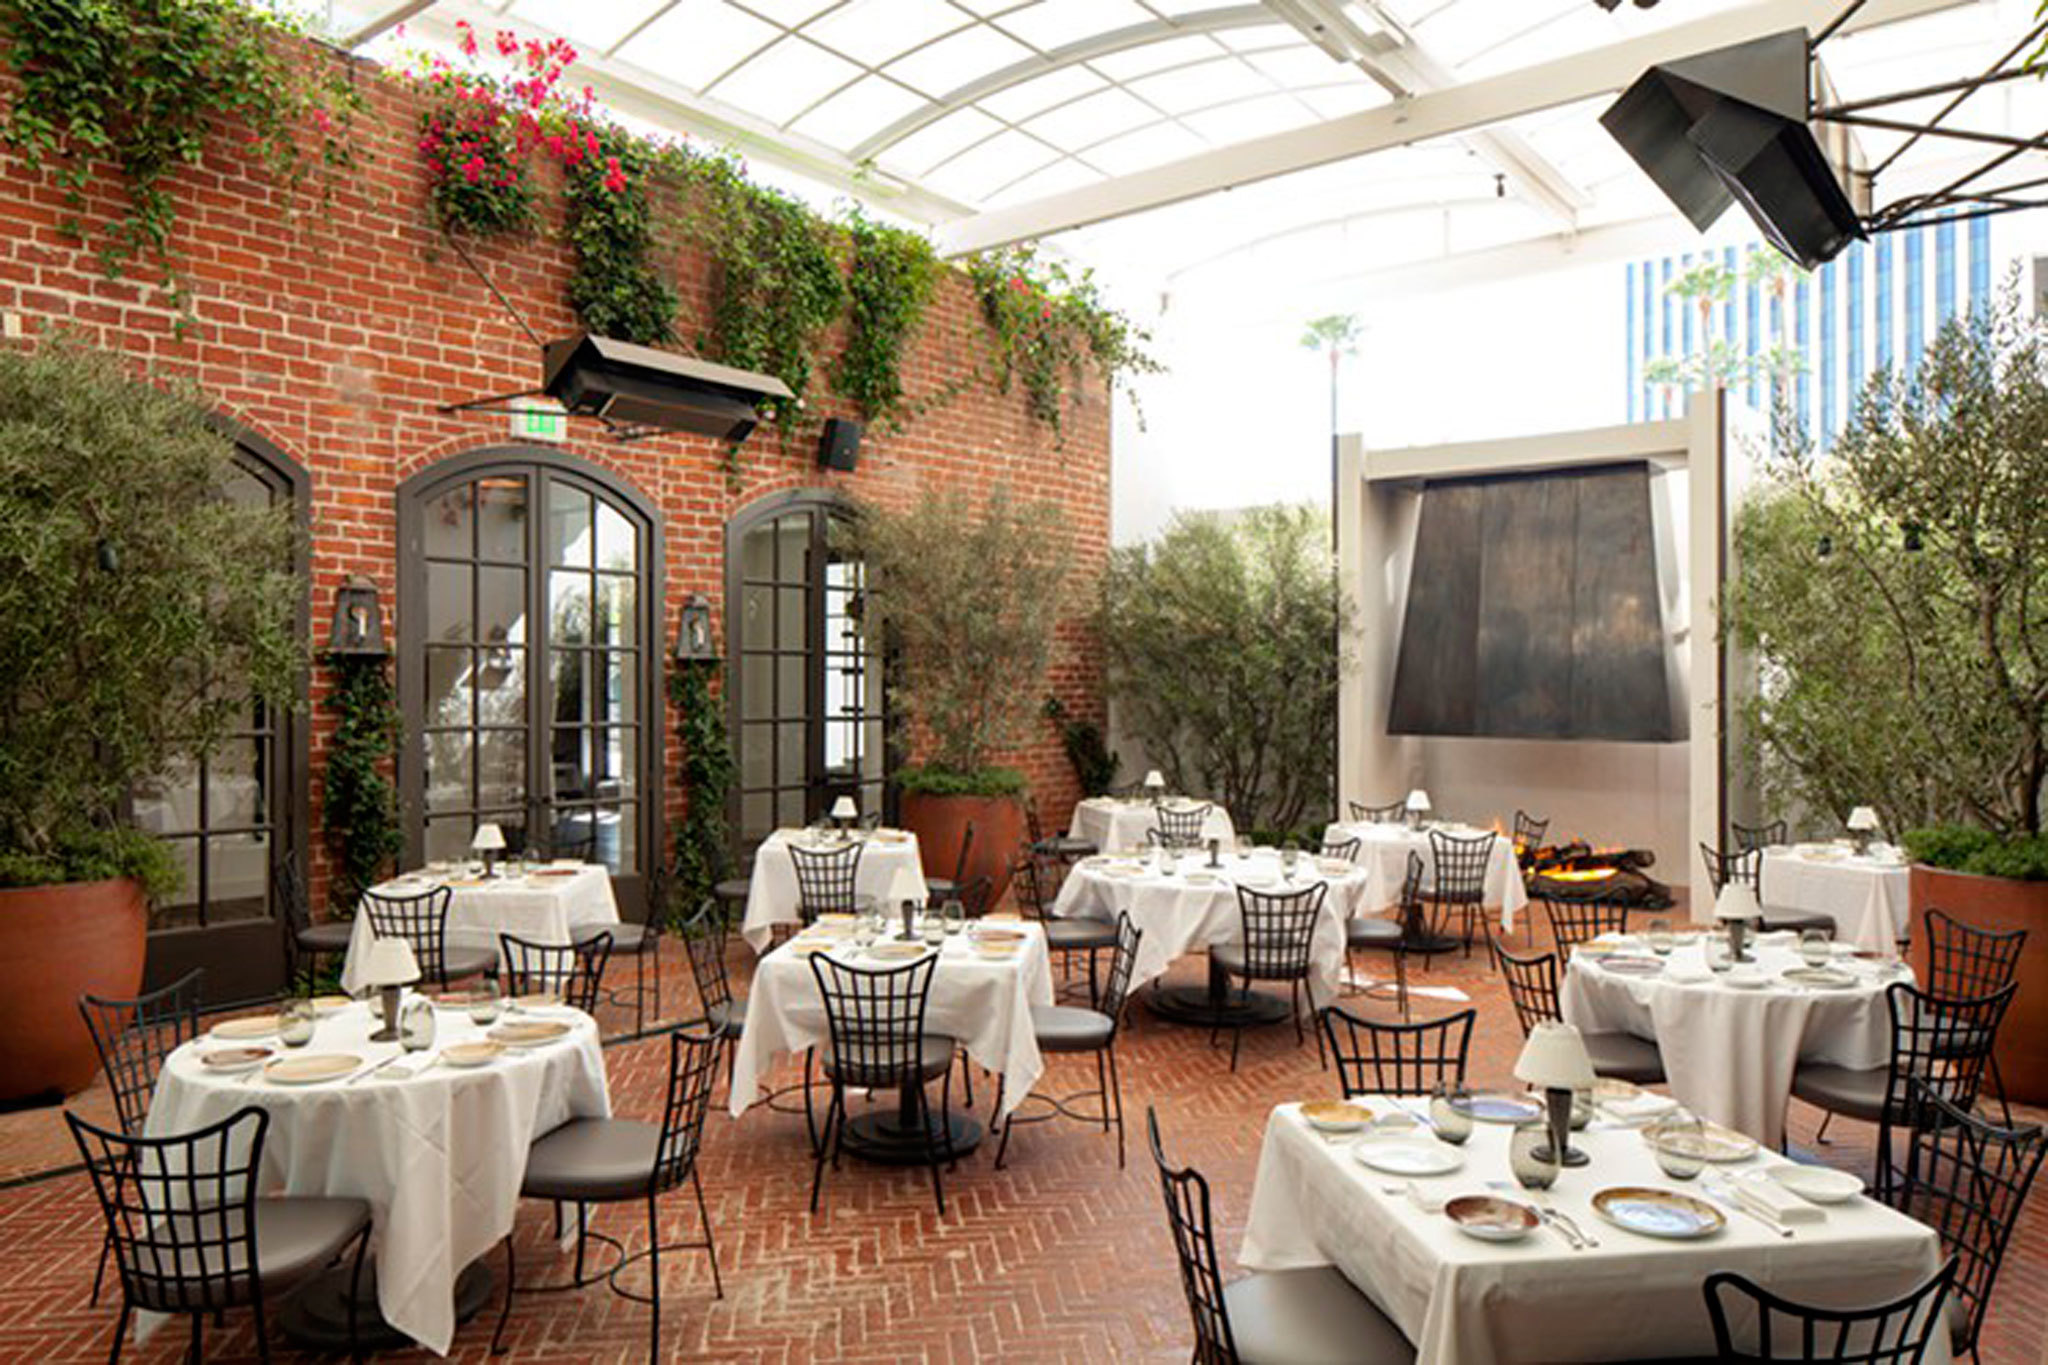 Best outdoor dining restaurants in Los Angeles